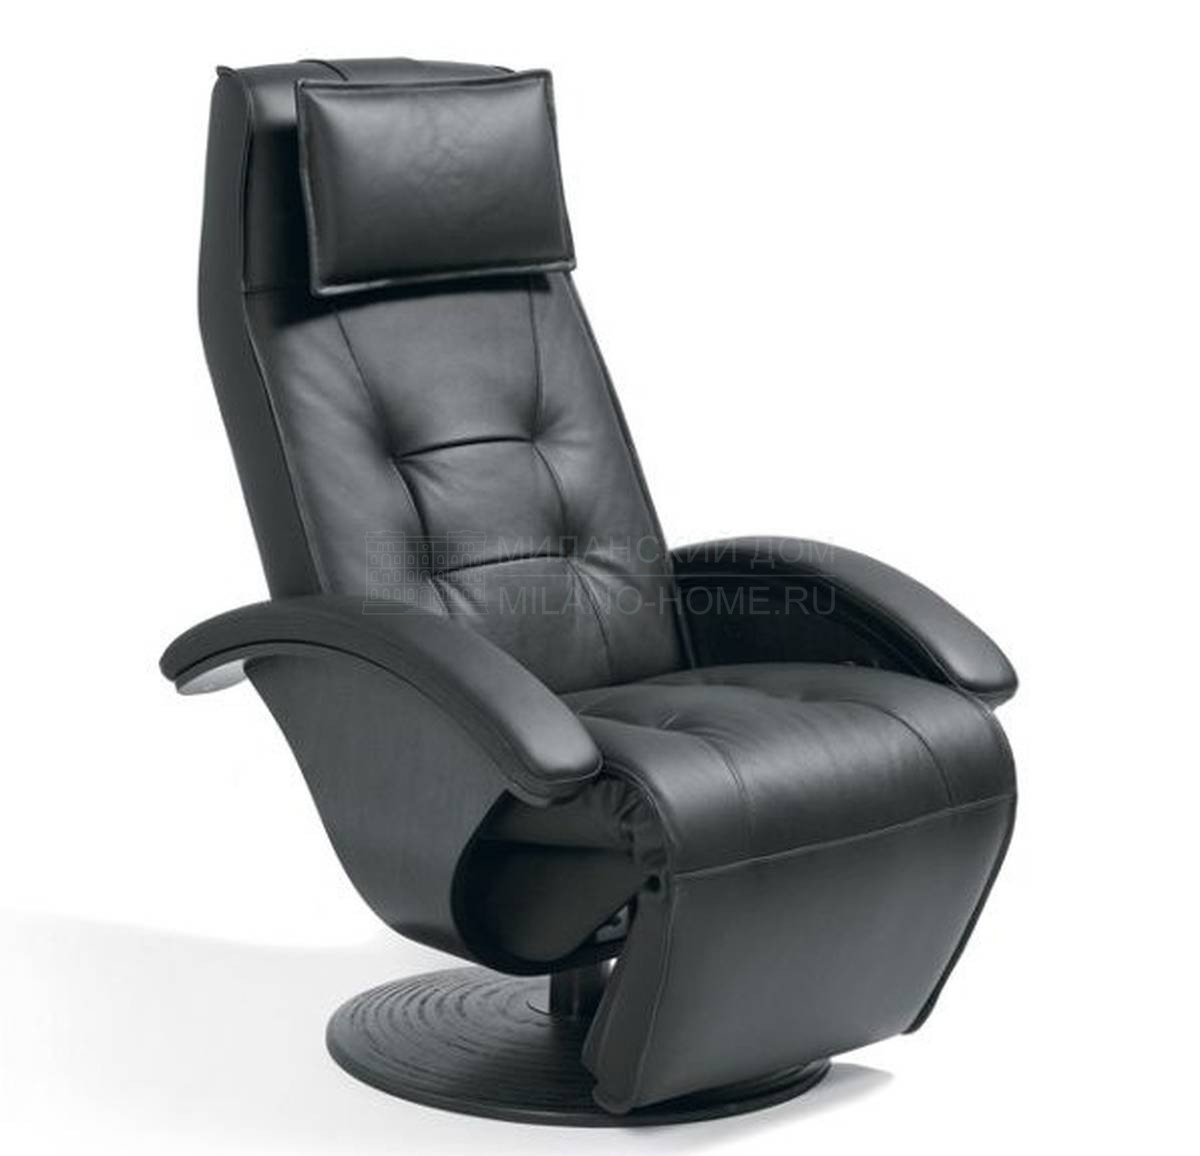 Кожаное кресло Mistral armchair из Франции фабрики ROCHE BOBOIS